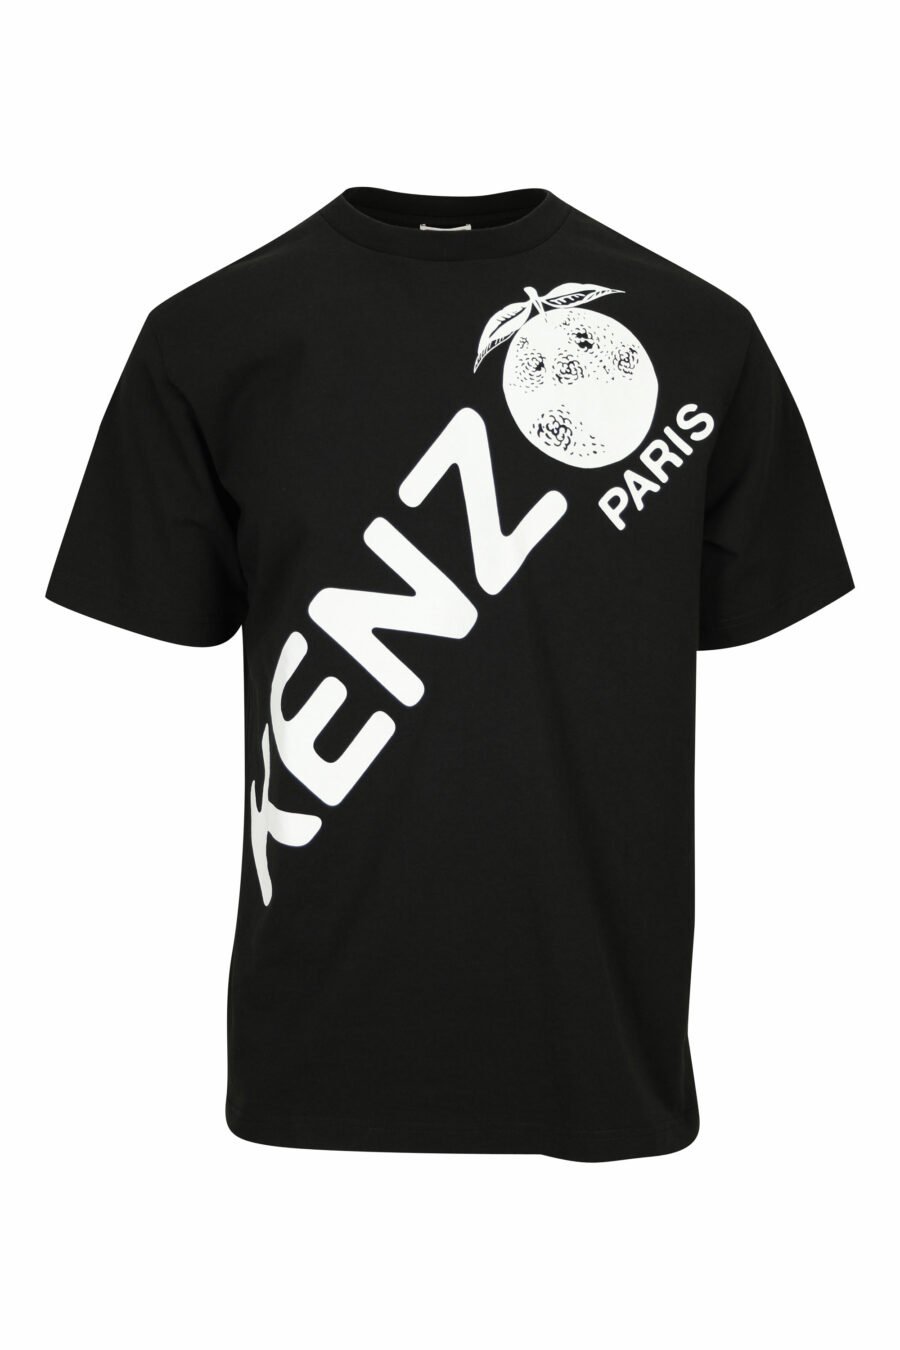 Camiseta negra con maxilogo diagonal "kenzo orange" - 3612230626997